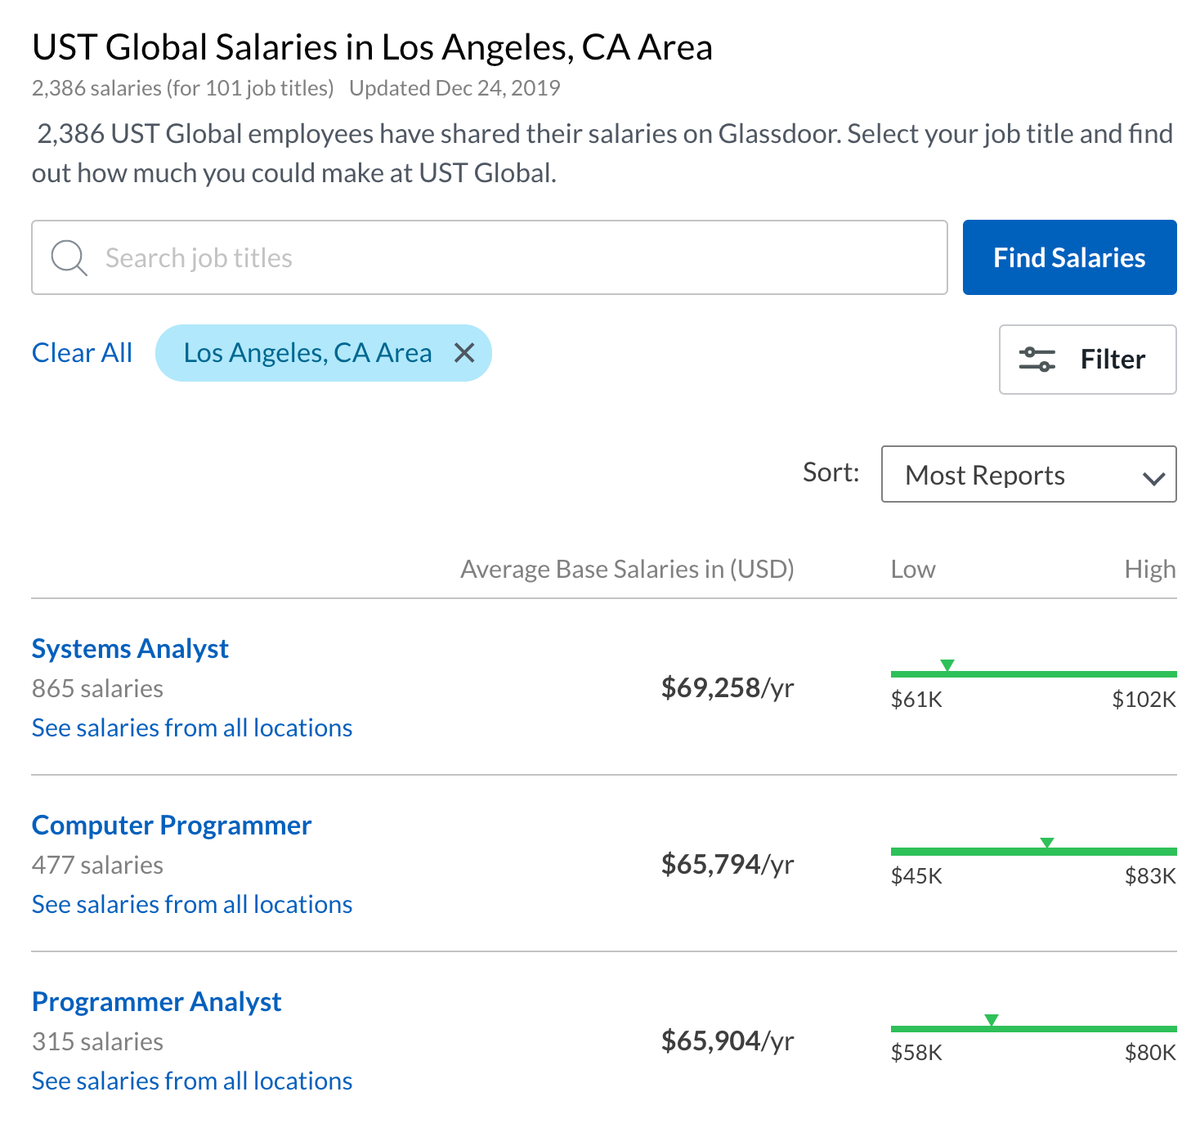 Годовые зарплаты разработчиков и аналитиков в компании UST, по данным сайта Glassdoor